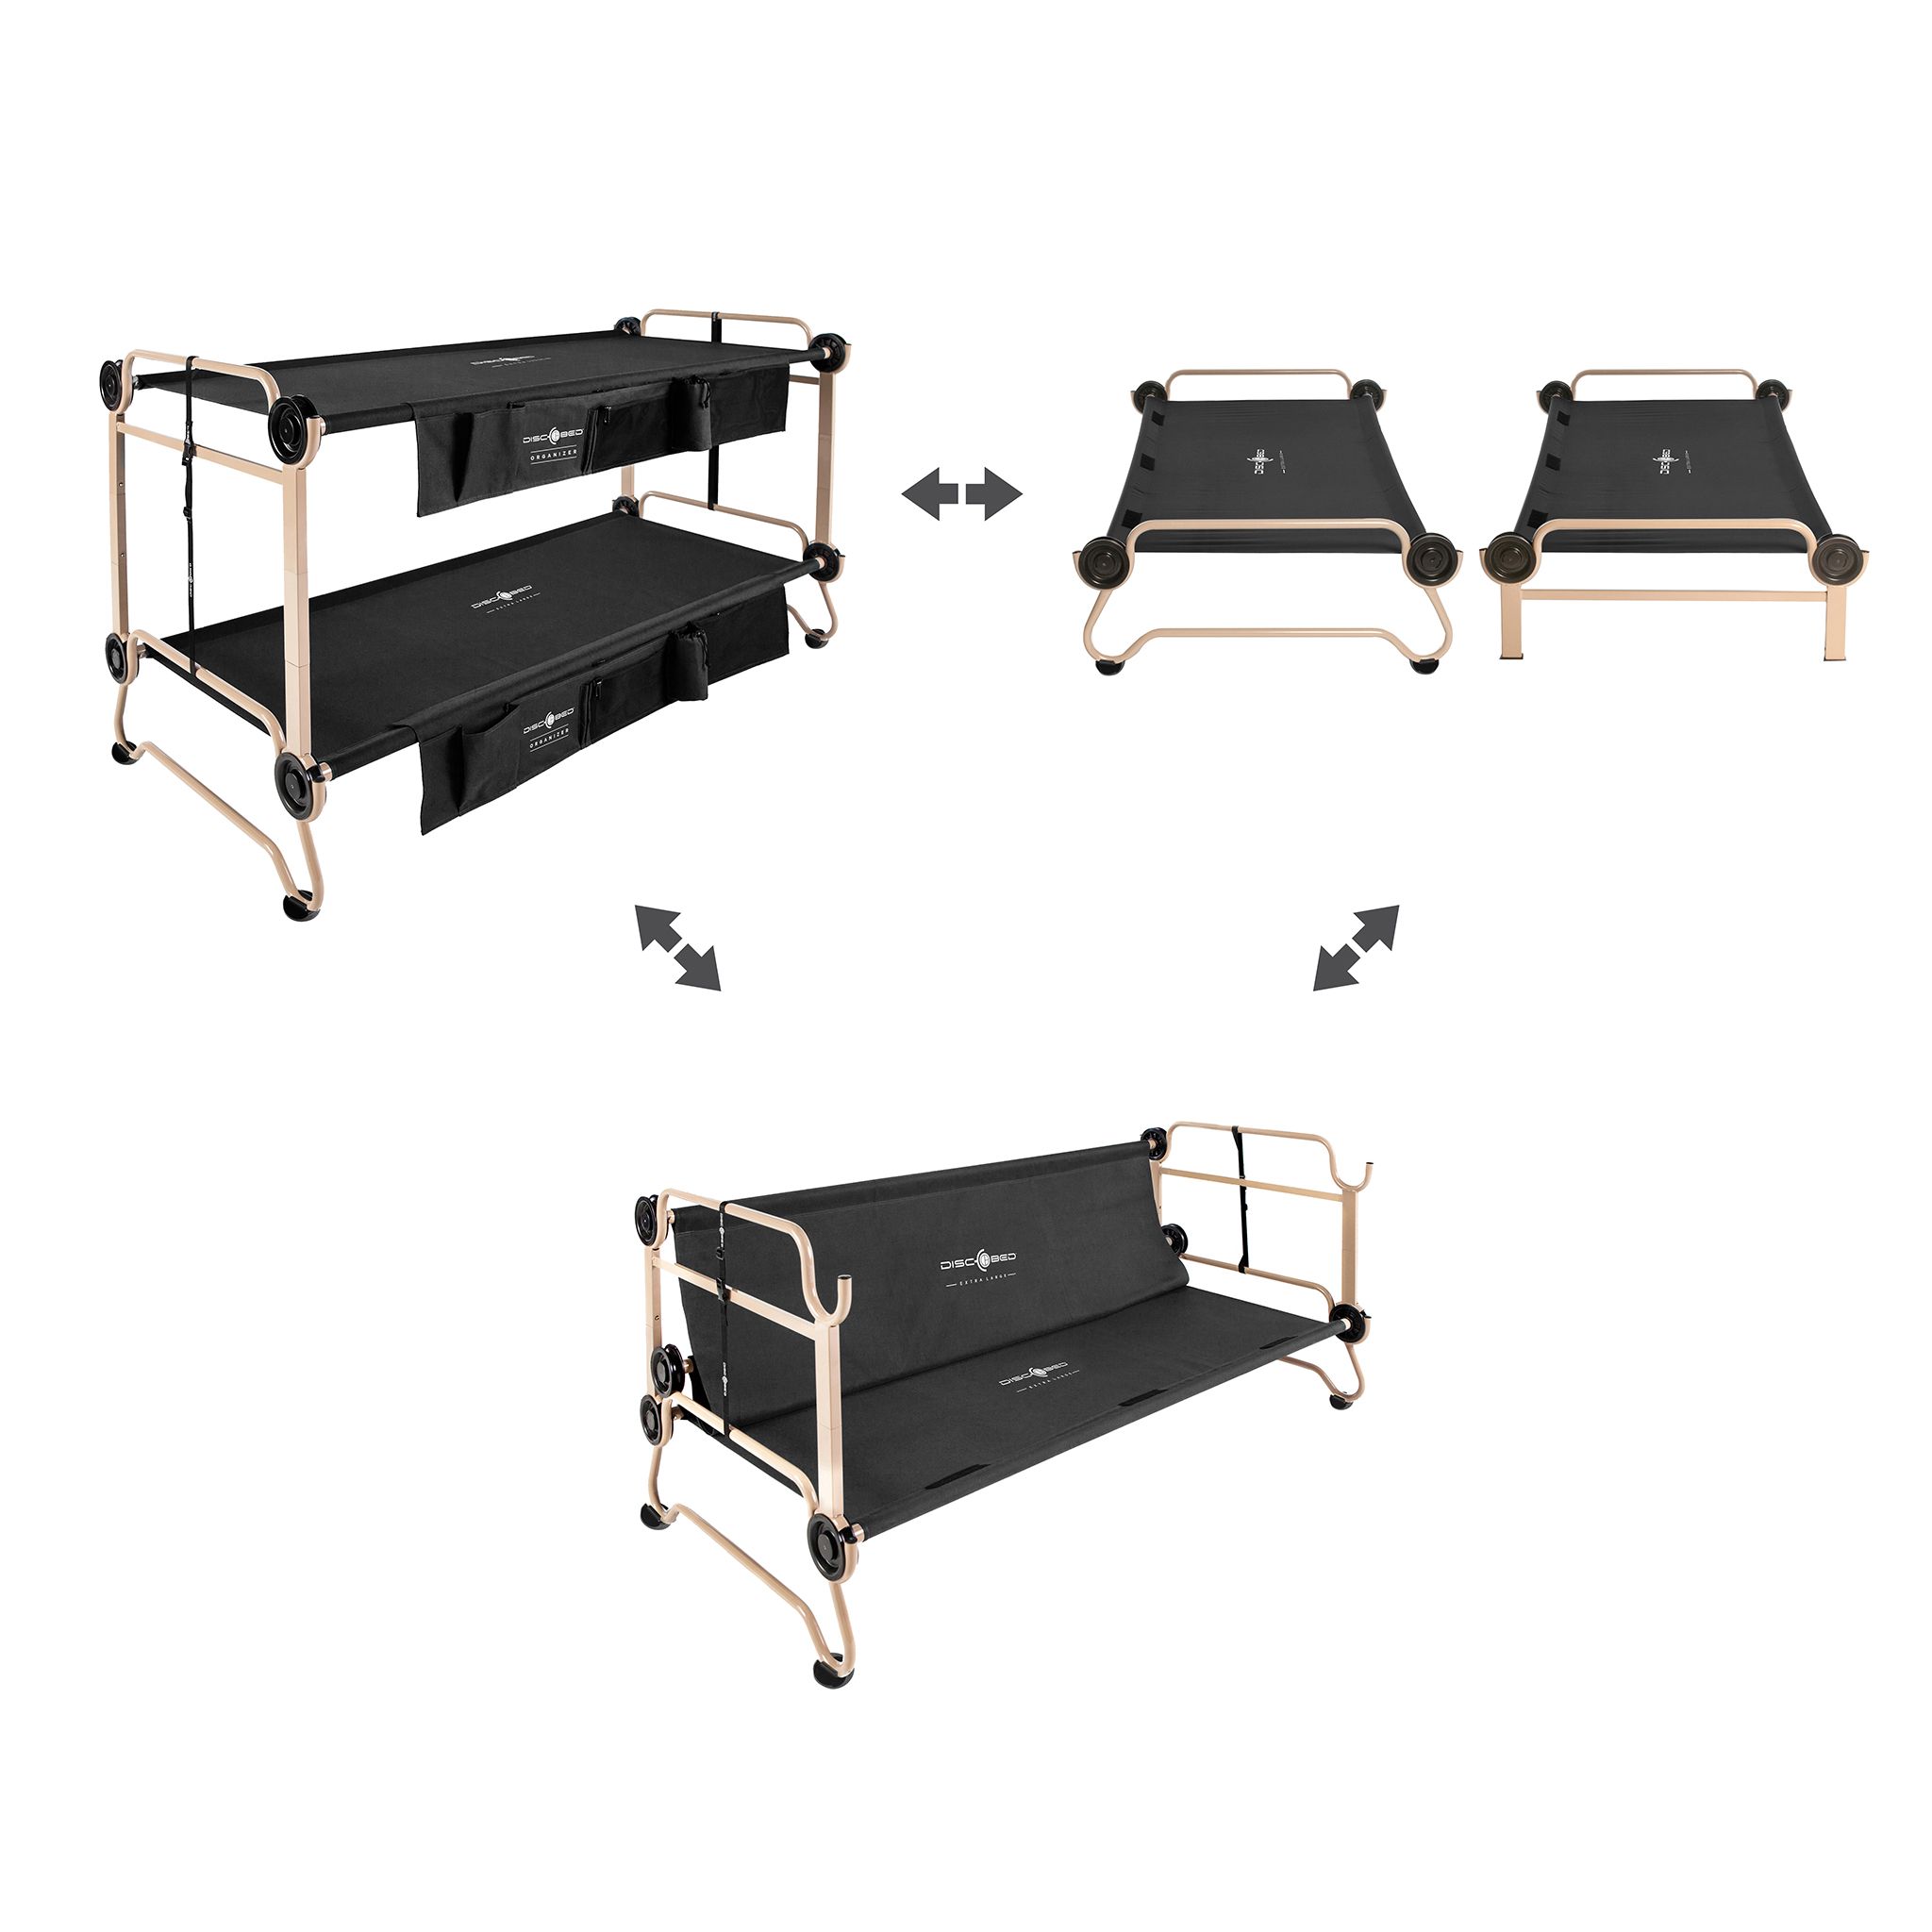 Costco Camping Bunk Beds, Costco Camping Bunk Beds